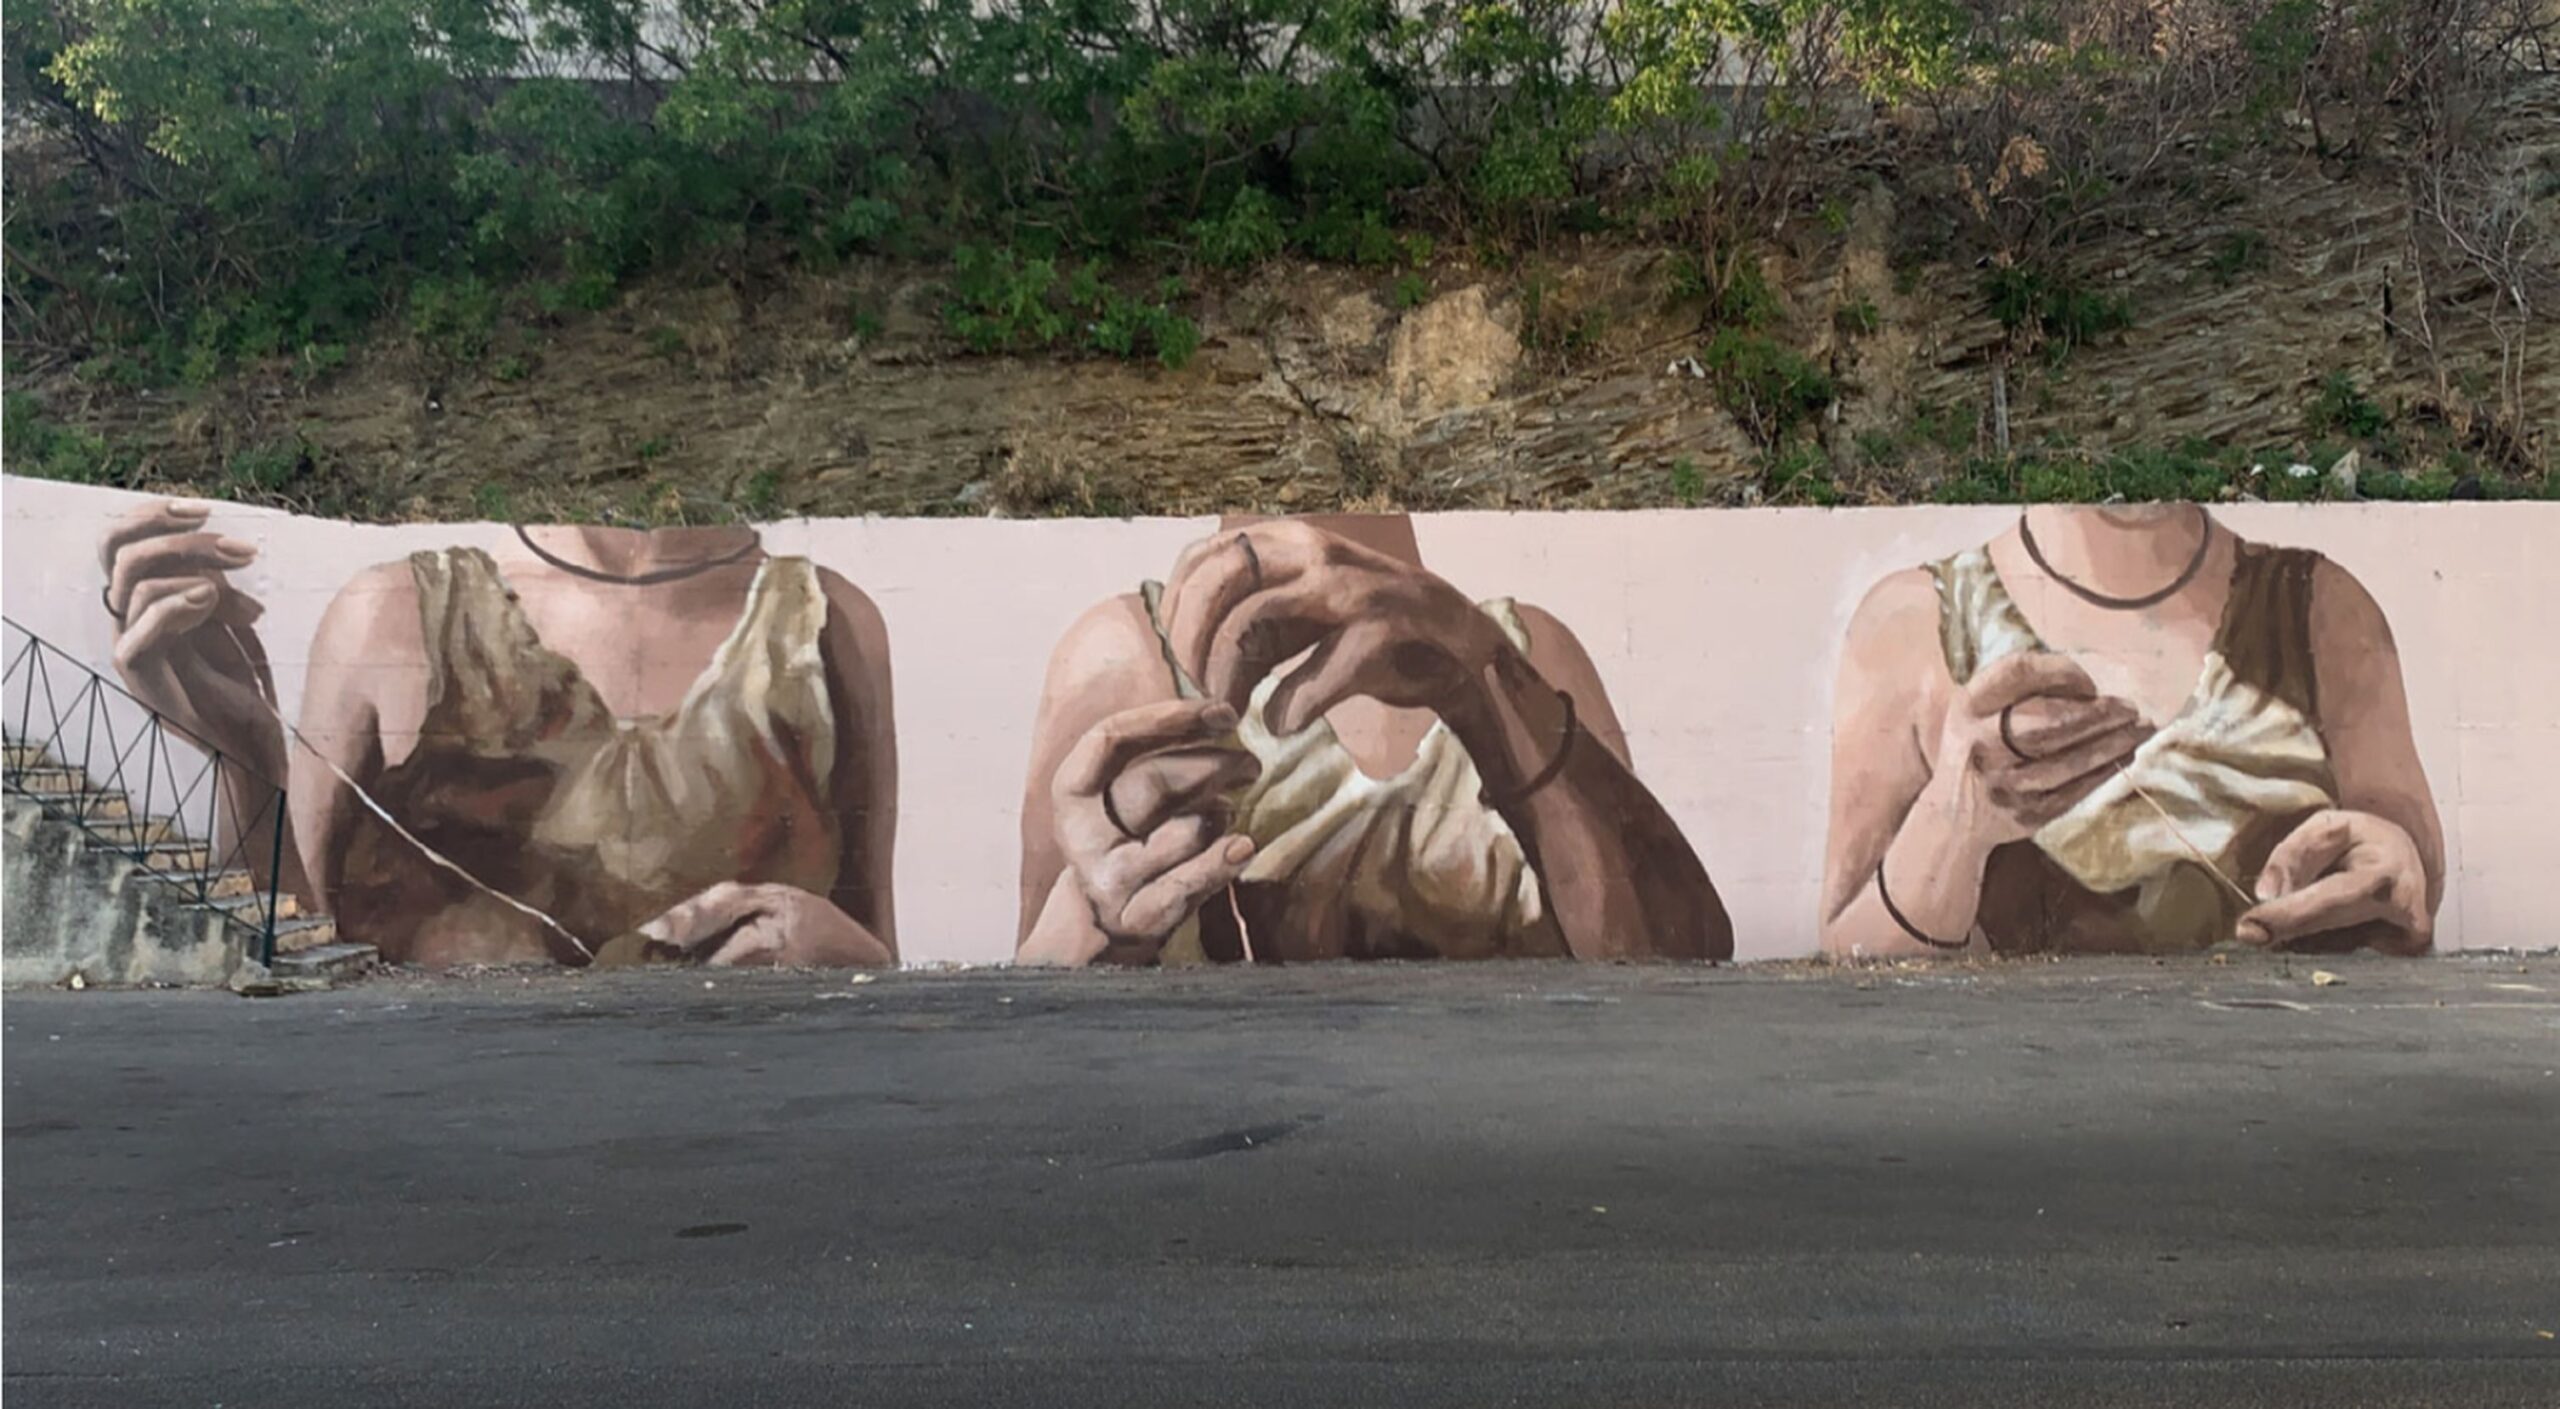 Ligama, Murale Punto a capo, Corleone, 2020